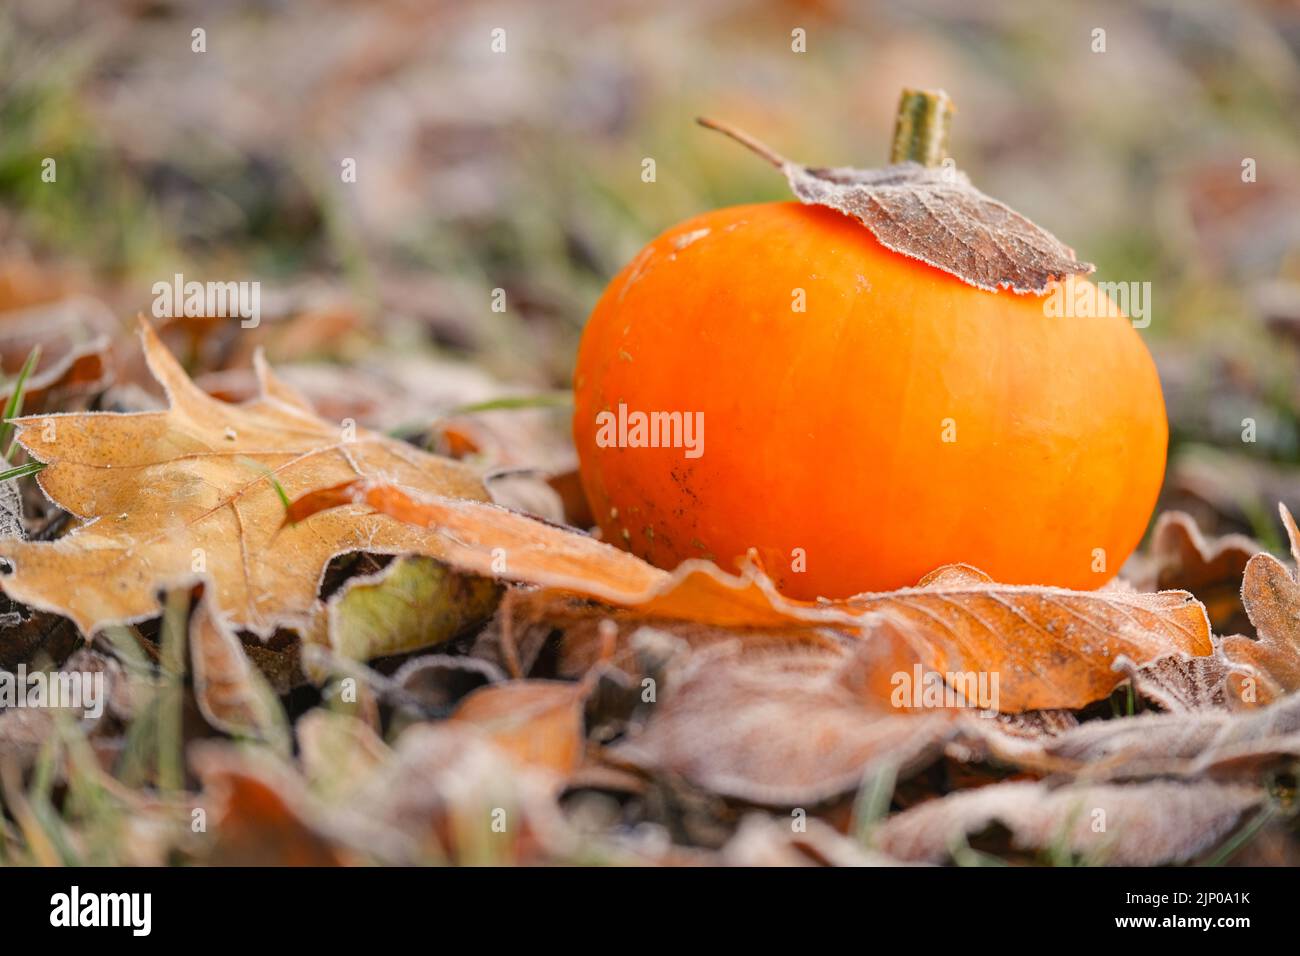 Herbst. Kürbis im Herbst Blätter im Raureif. .Erste Fröste.Weißer Frost auf braunen Blättern. Herbstwetter.schöne Naturtapete. Stockfoto